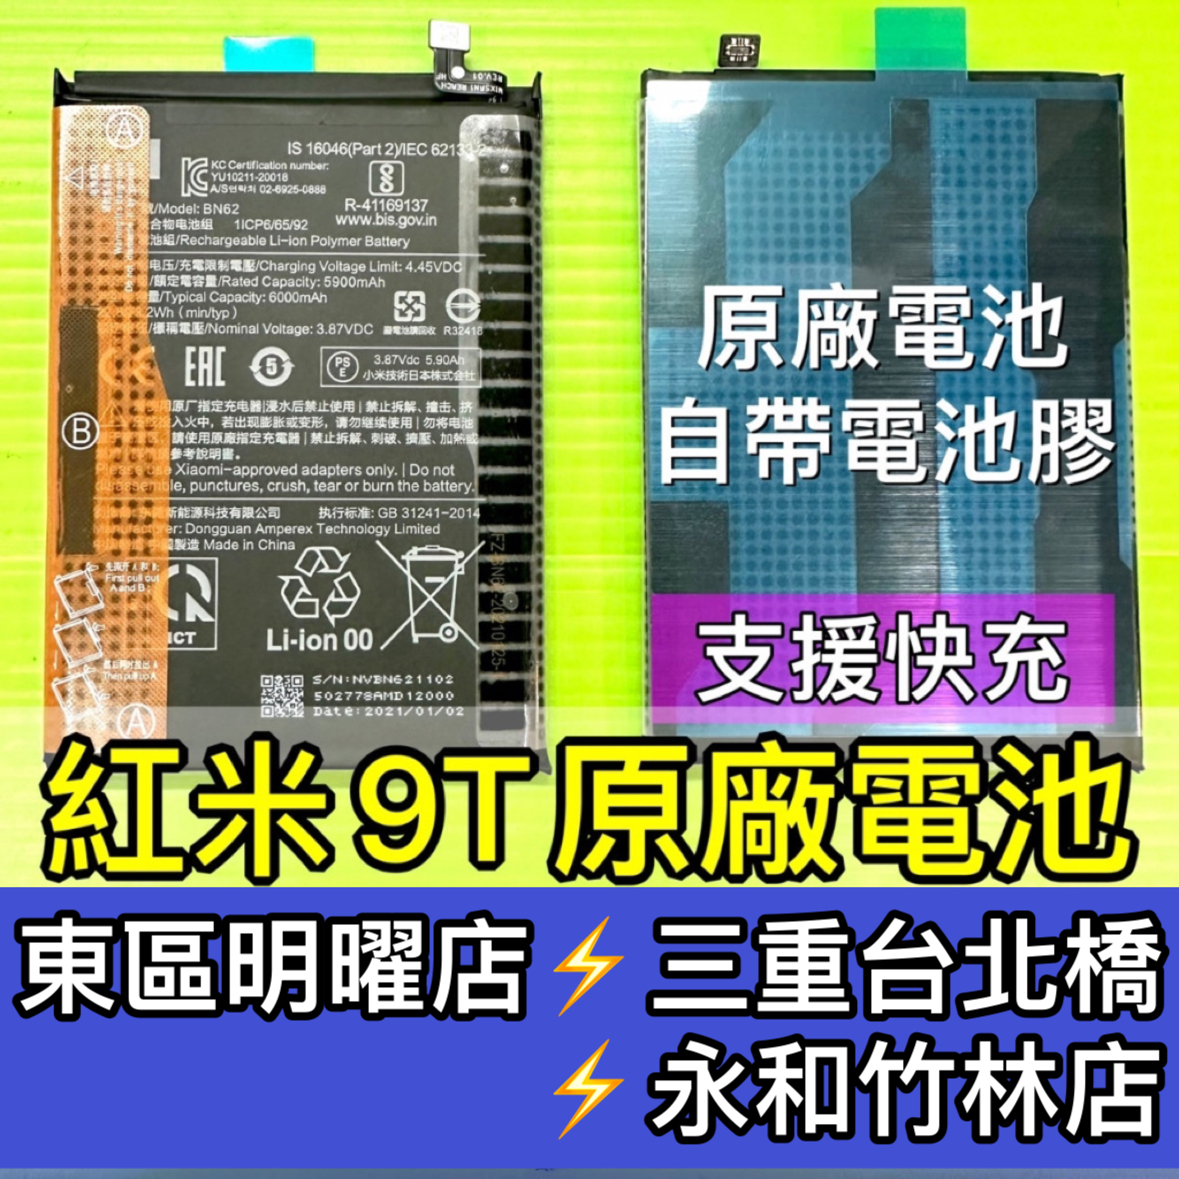 紅米 9T 電池 紅米9T 9T 電池 BN62 電池維修 電池更換 換電池